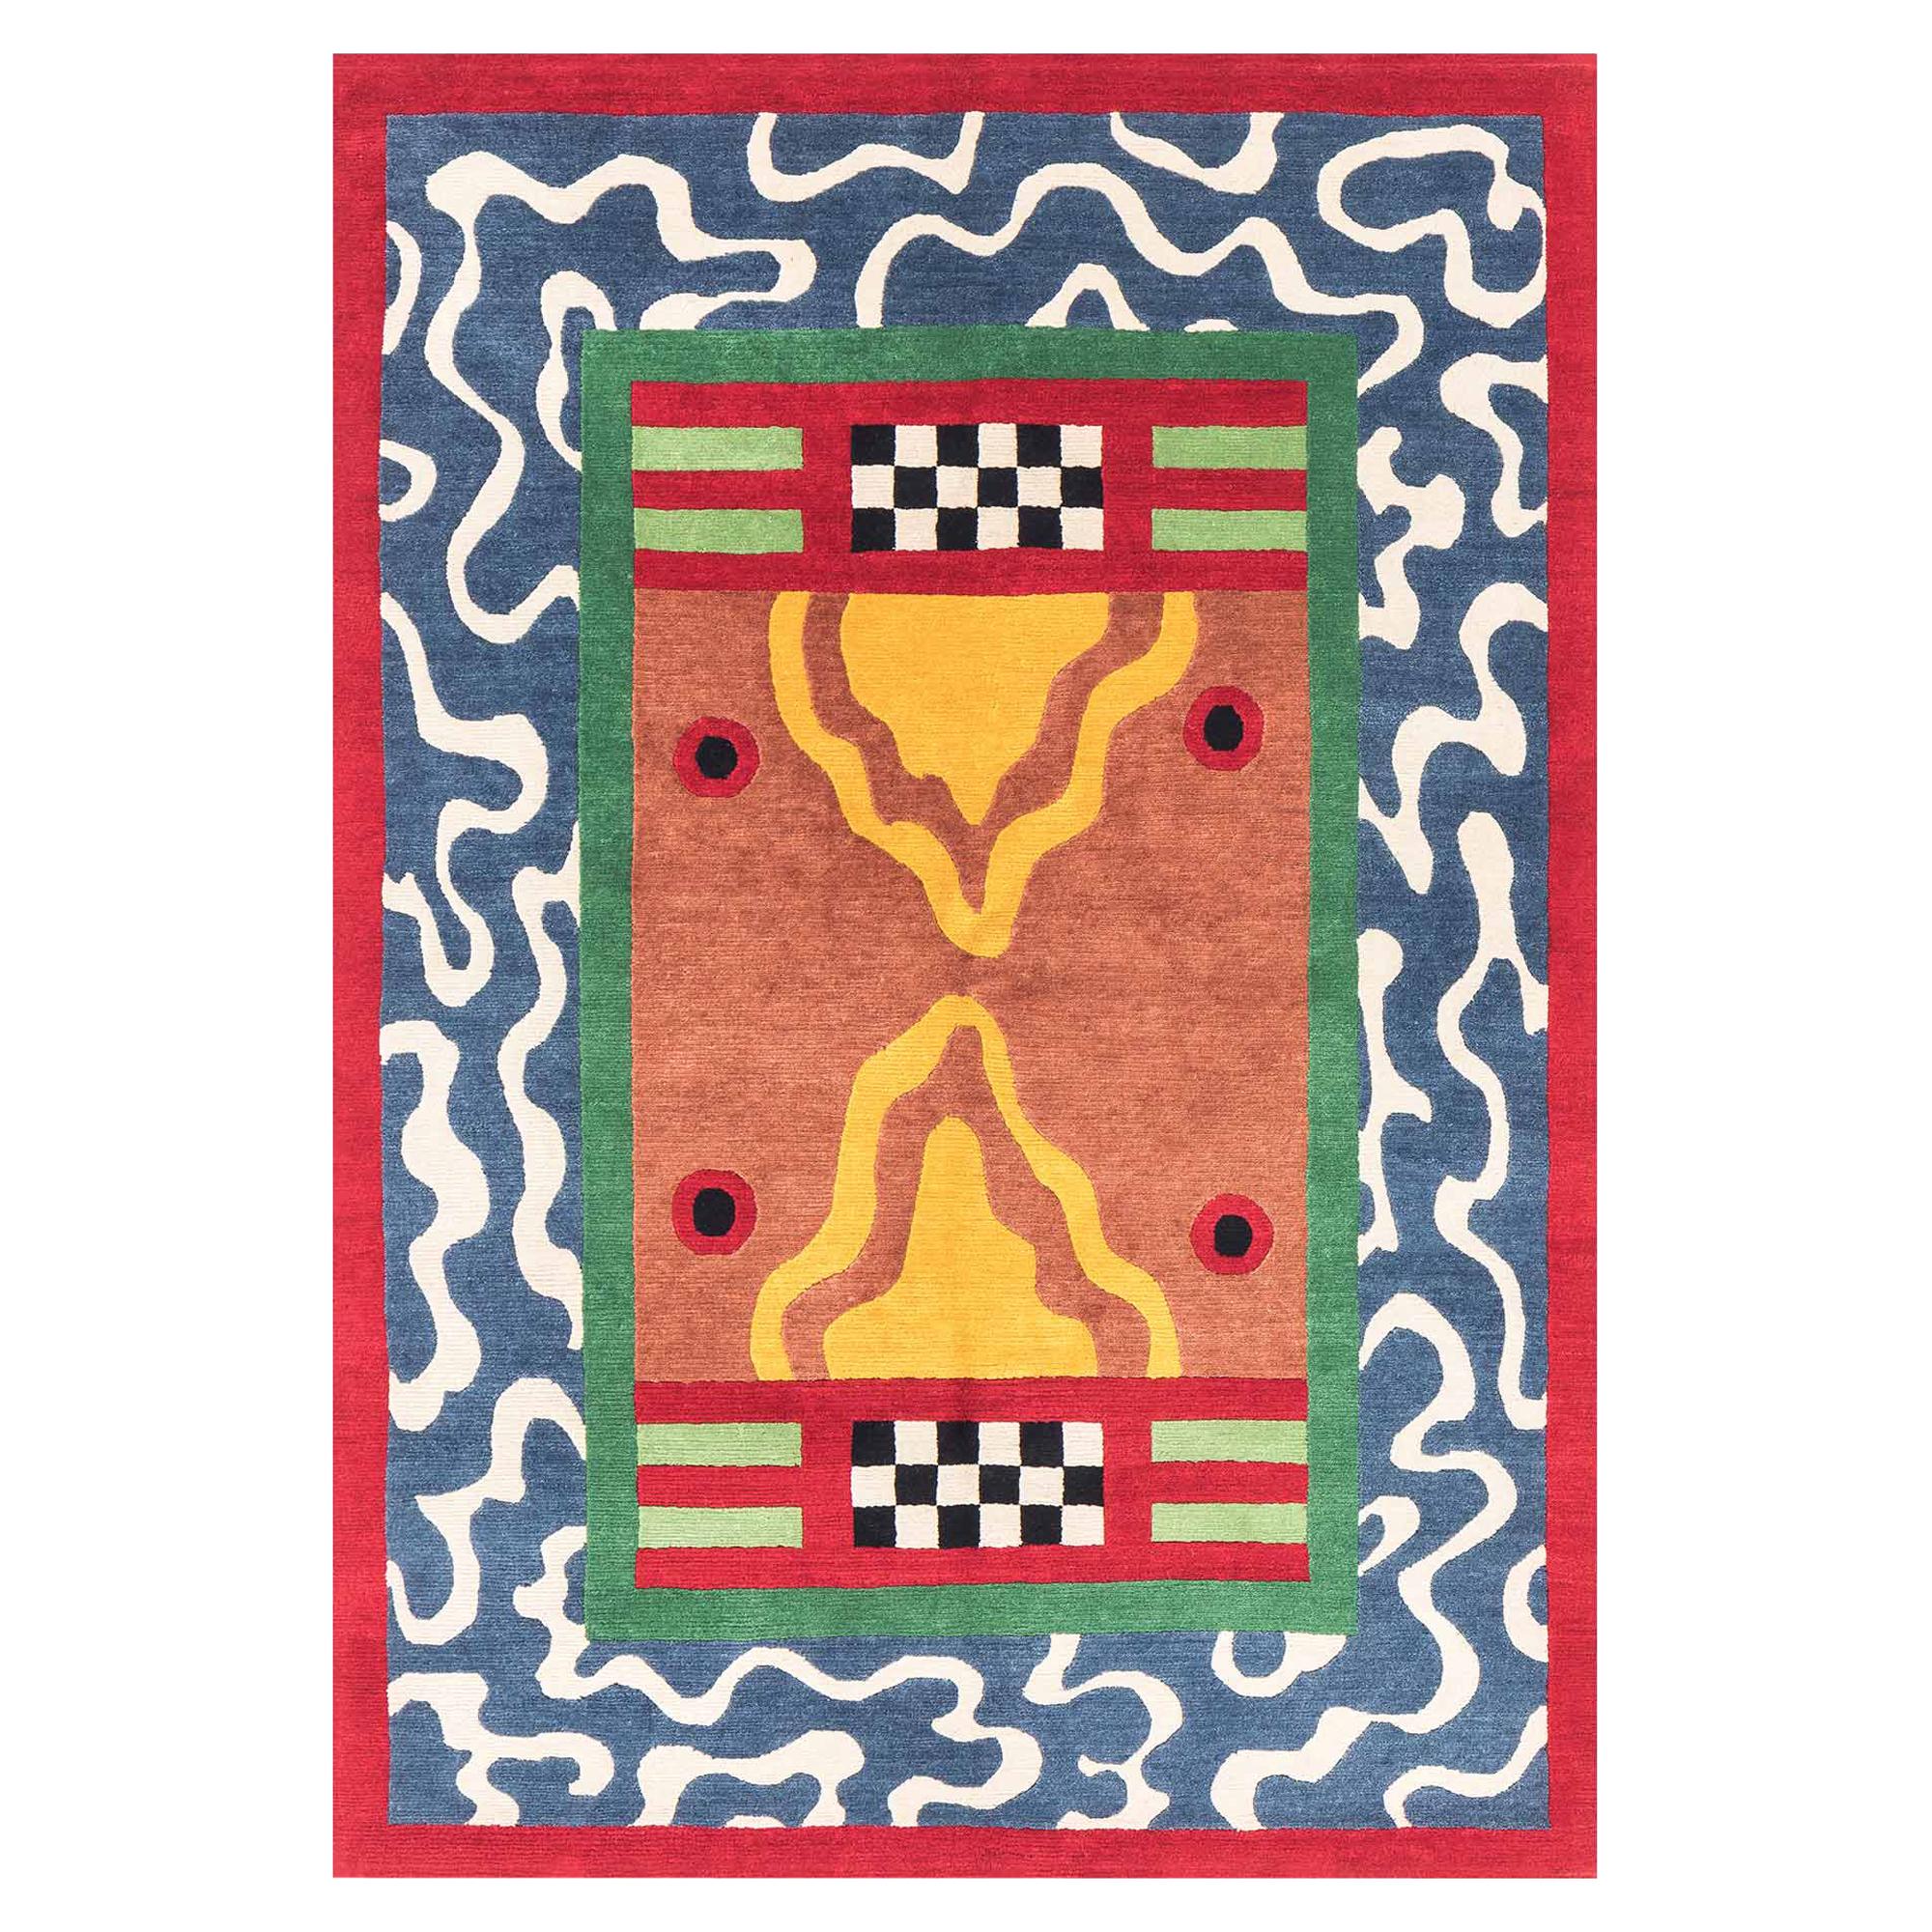 Big Birds Woollen Carpet by Nathalie du Pasquier for Post Design Collec/Memphis For Sale